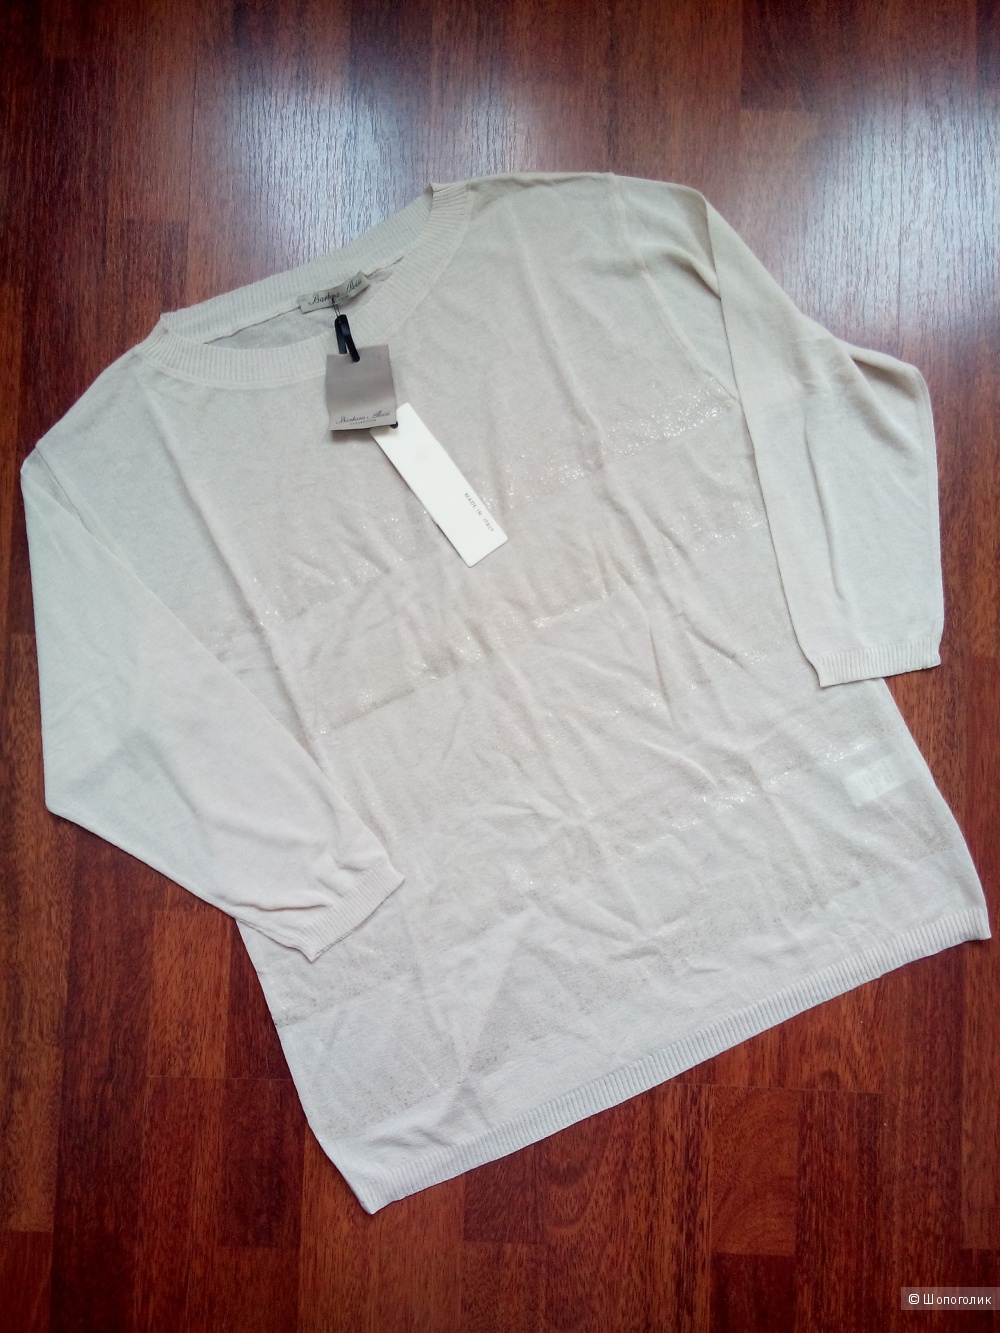 Пуловер-блузка рукав 3\4 BARBARA ALVISI Италия в размере M(44-48) кремового цвета.